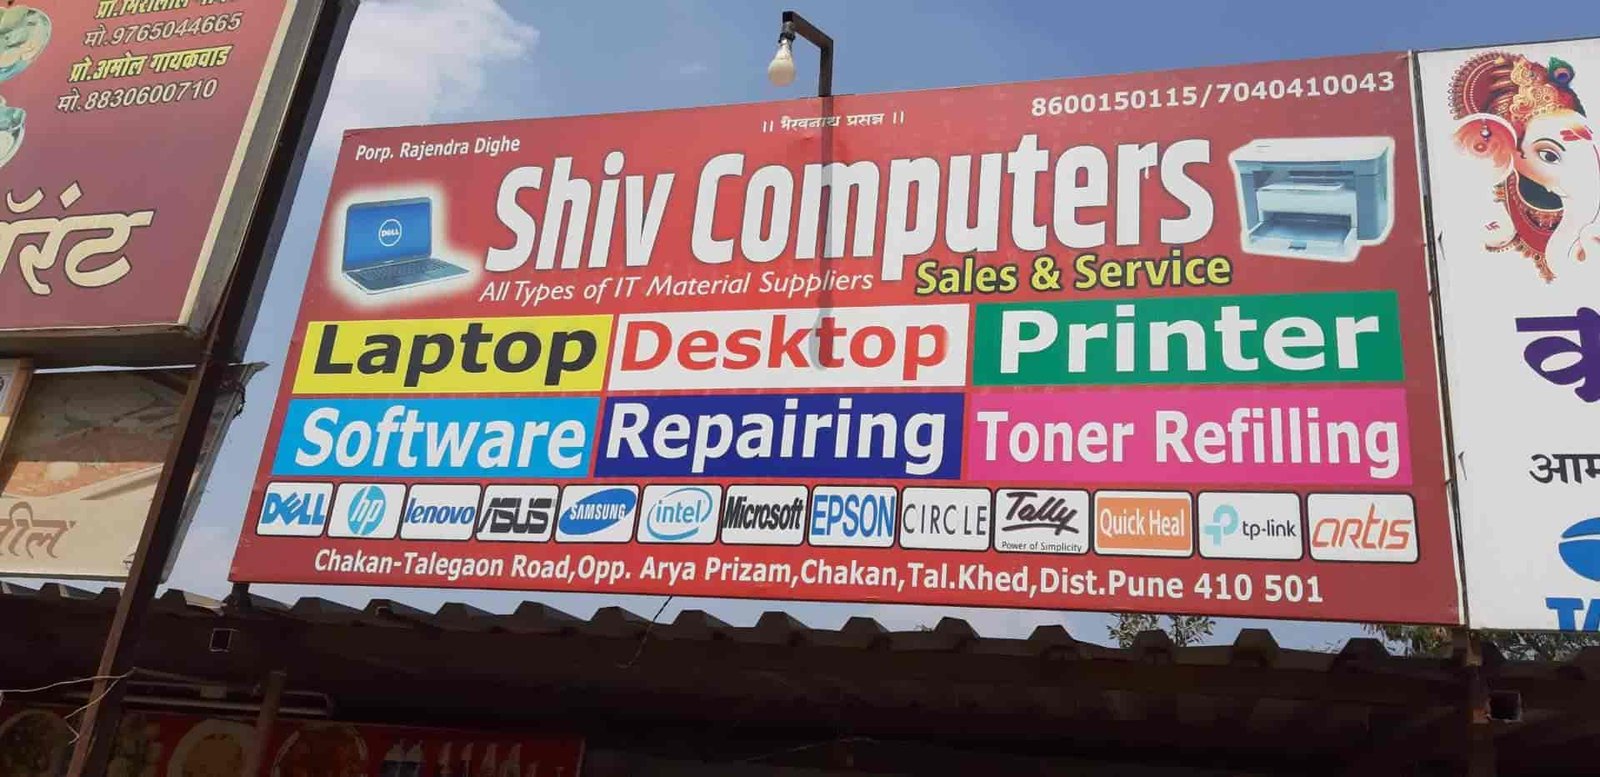 Shi Computers